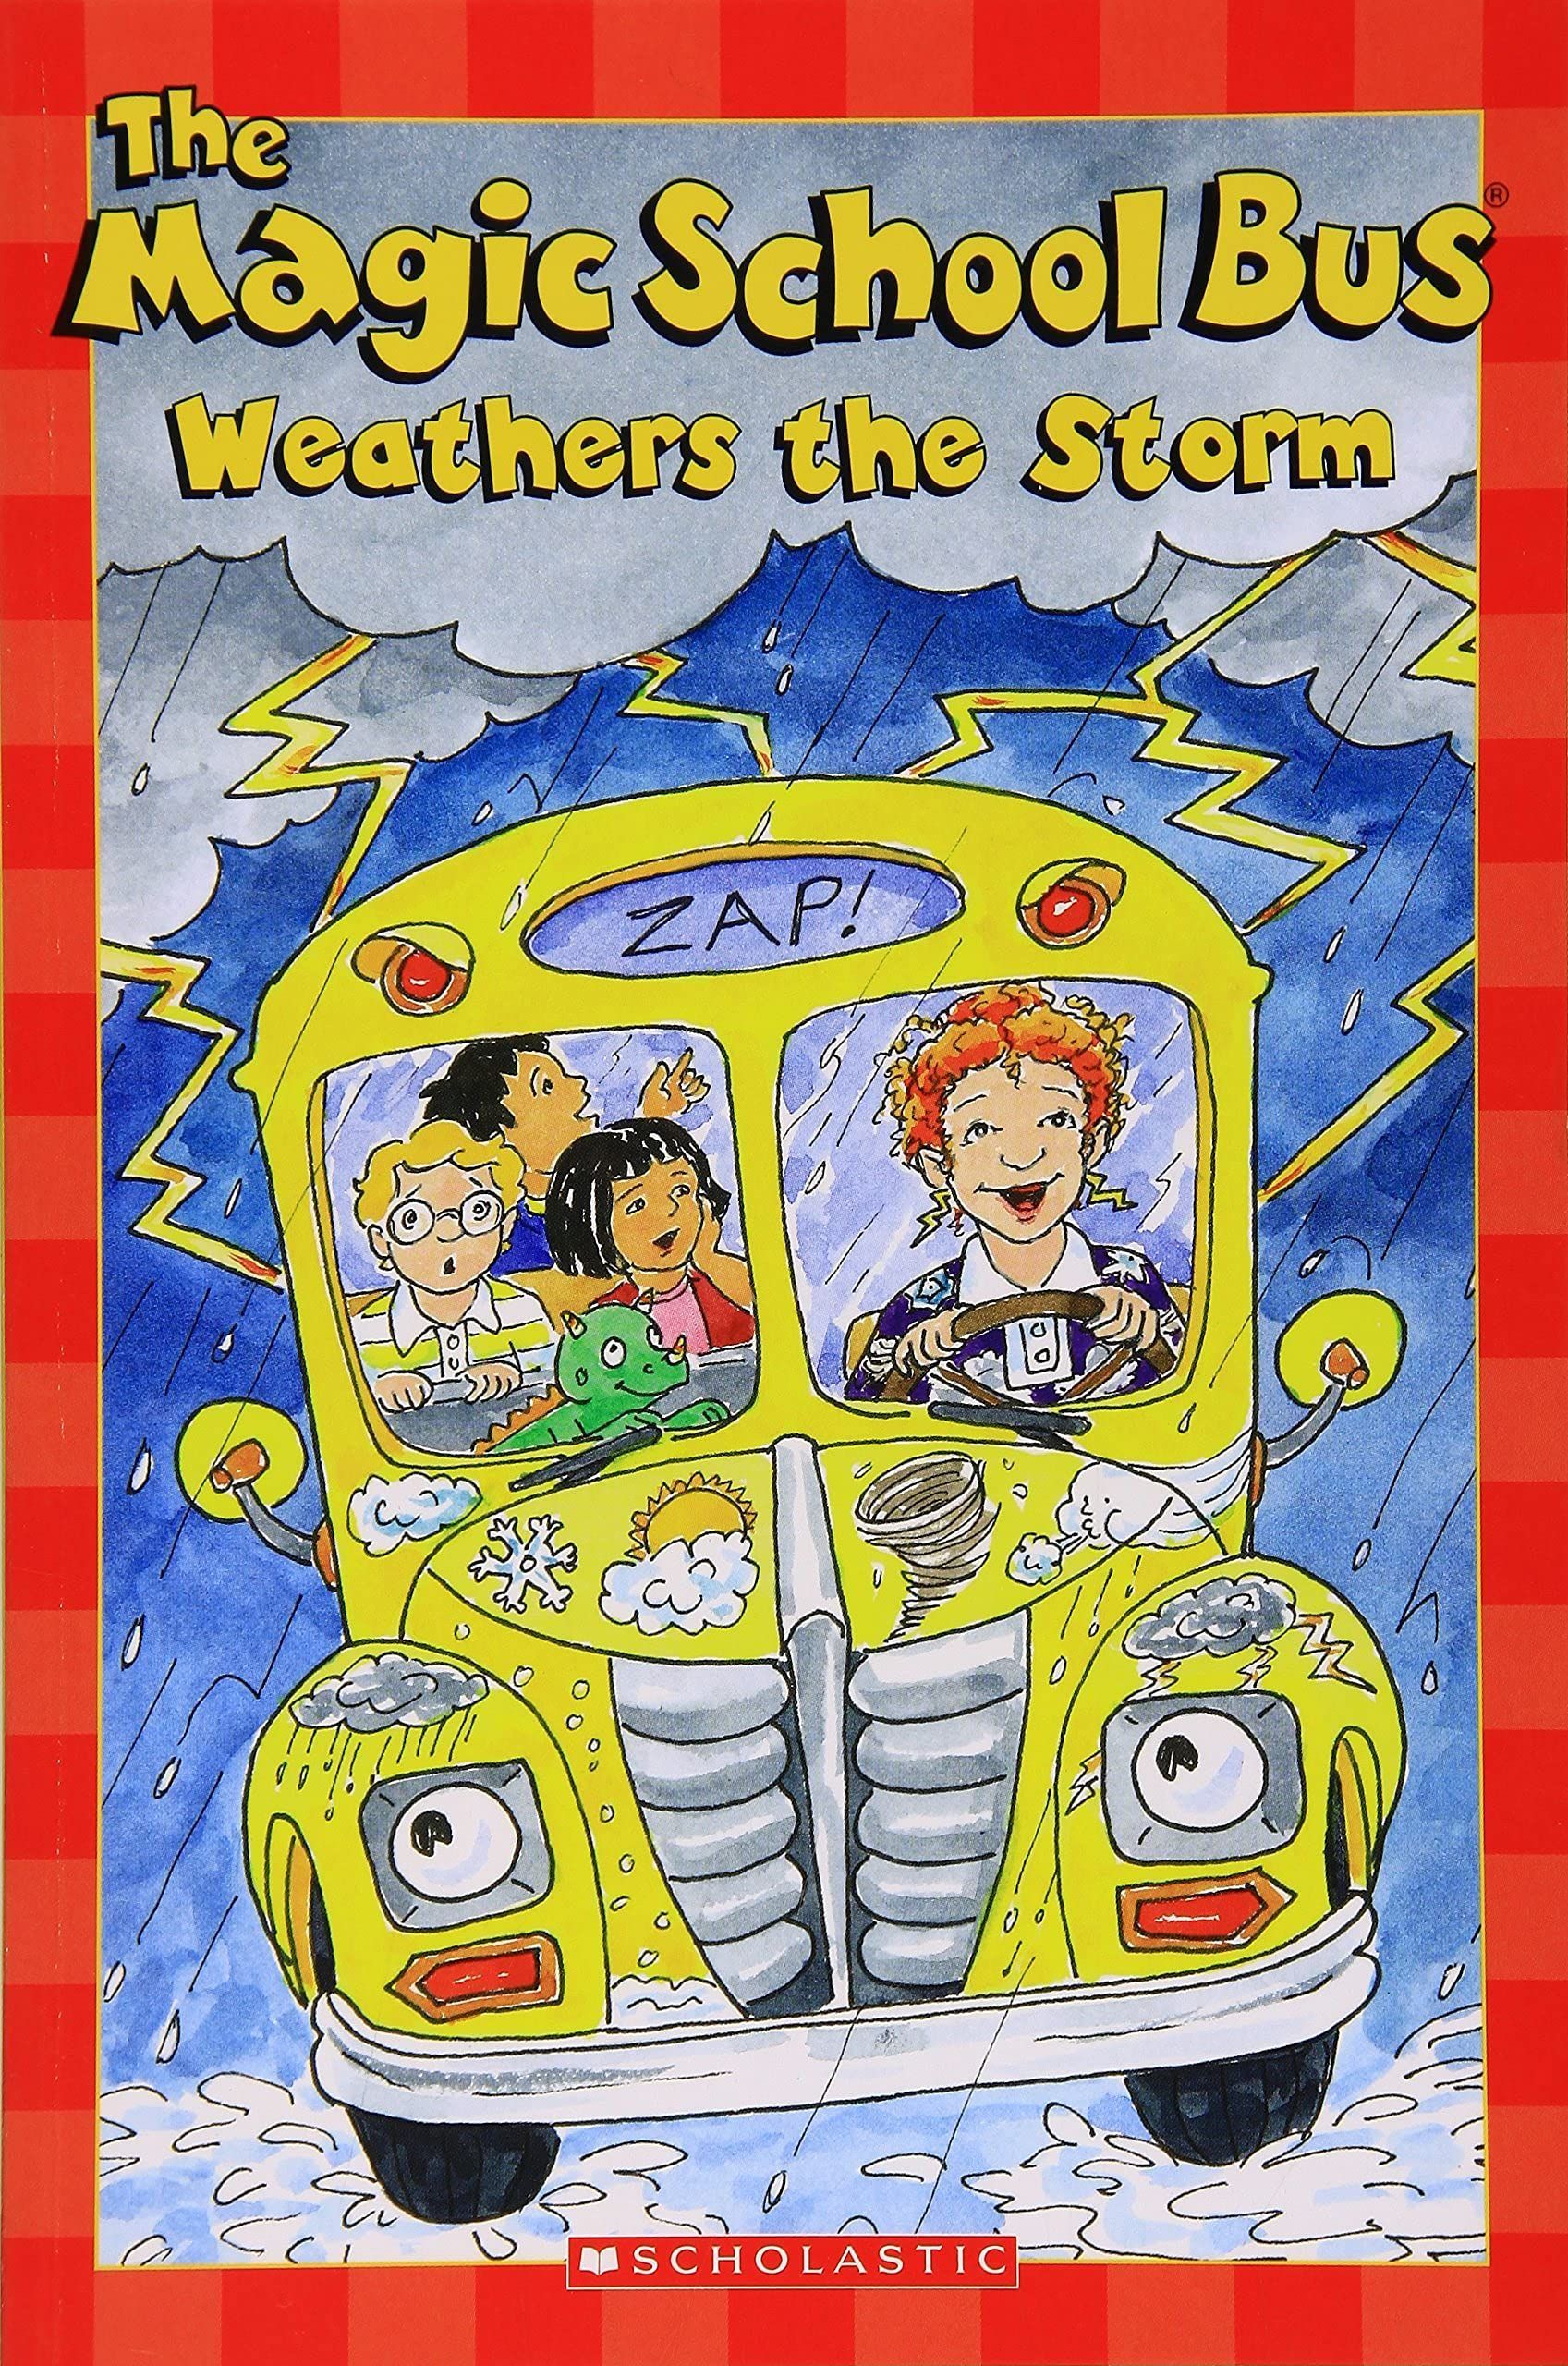 Magic school bus. Волшебный школьный автобус. Волшебный школьный автобус книга. Magic School Bus books. The Magic School Bus.